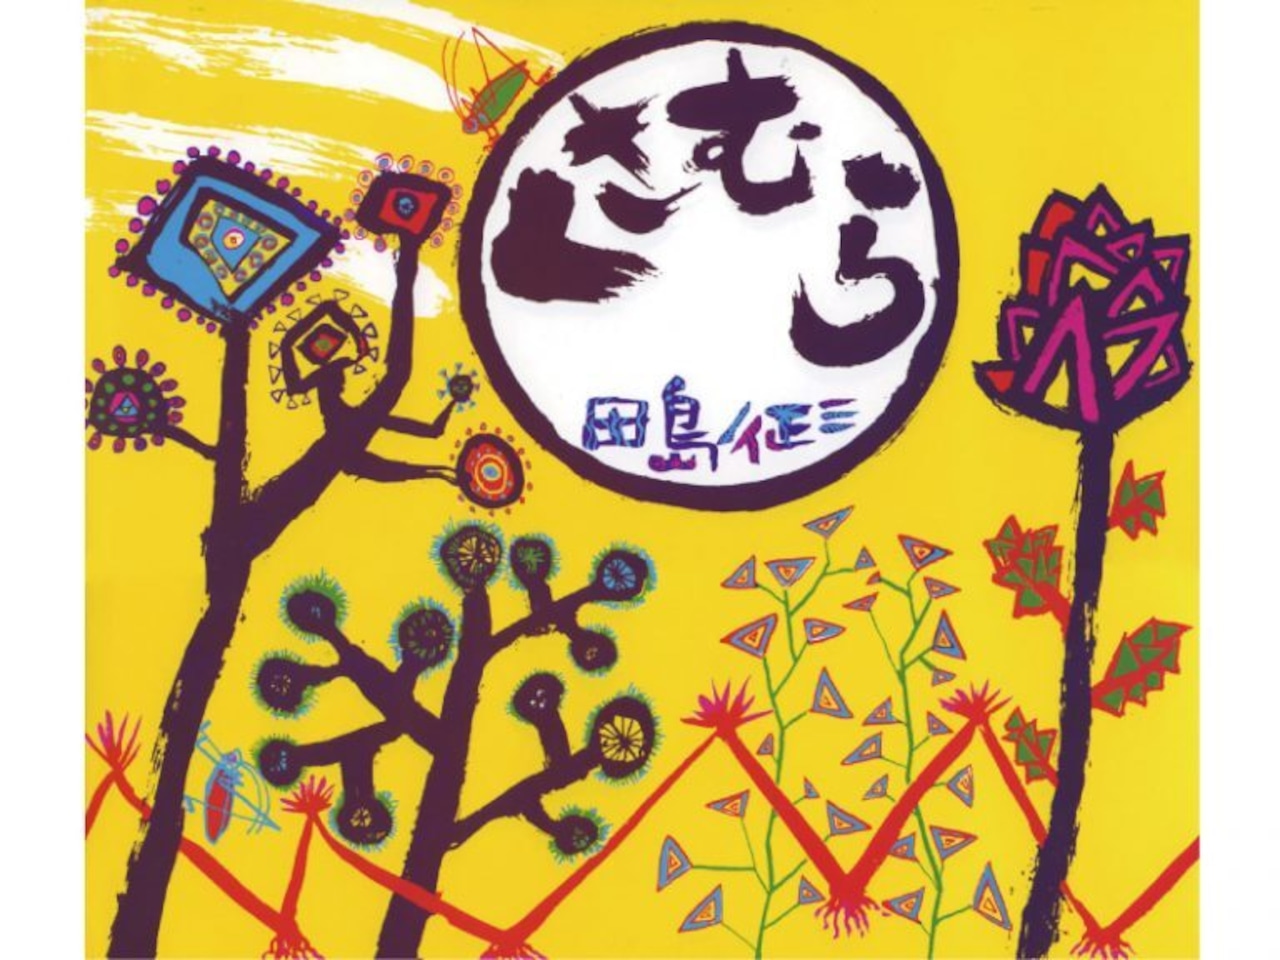 田島征三 シルクスクリーン「花と蝶」/ Tashima Seizo Screen painting ( Flower and Butterfly)